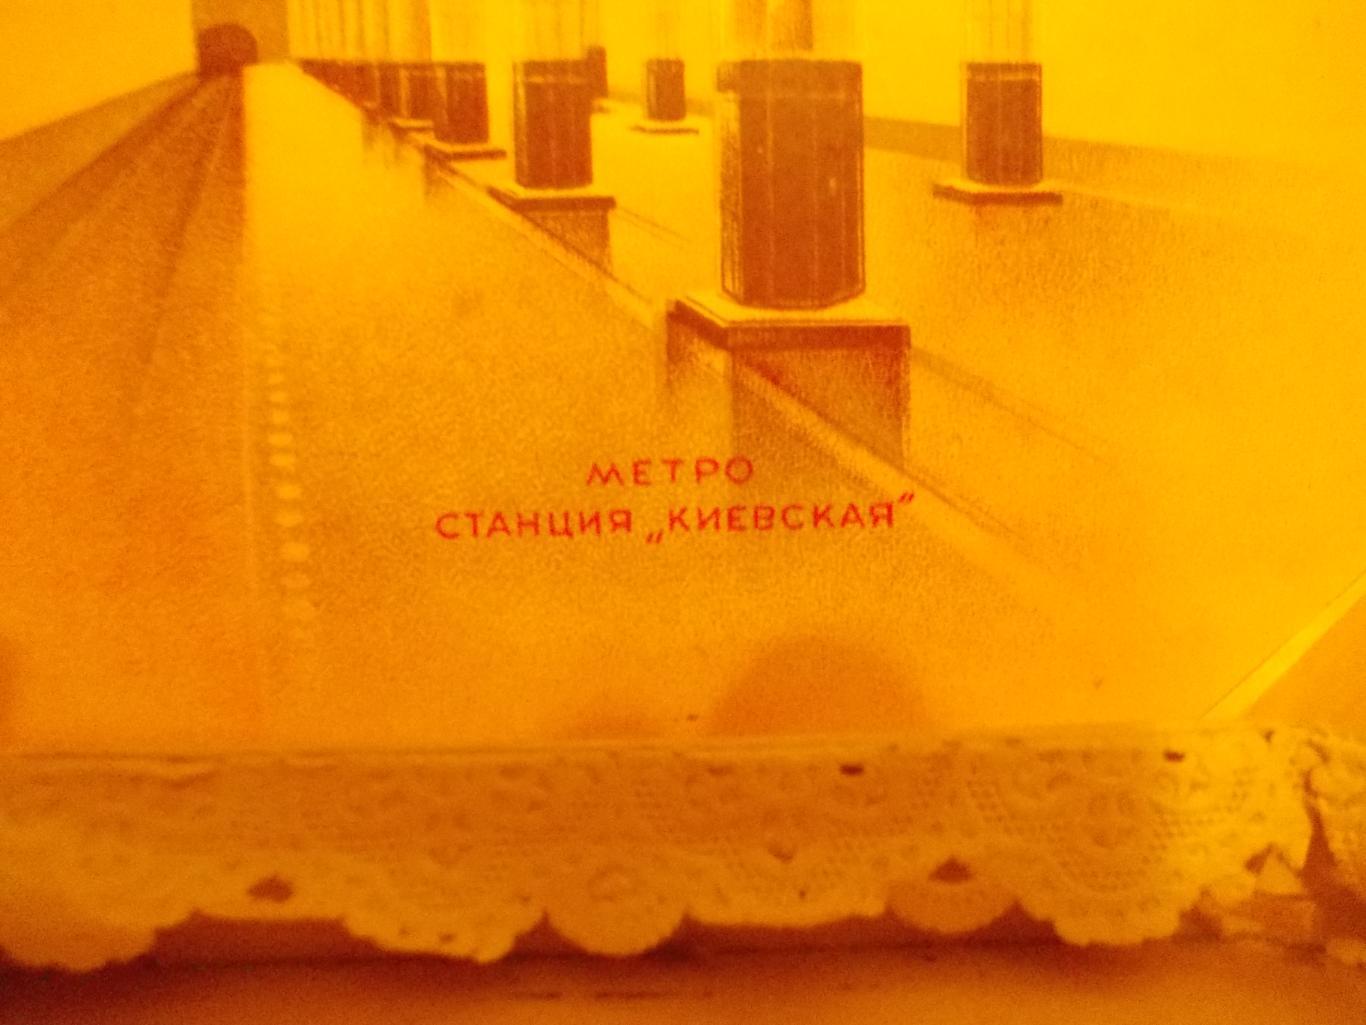 Коробка от шоколадных конфет Ассорти,ф-ка Красный октябрь, Москва. !951 год. 6